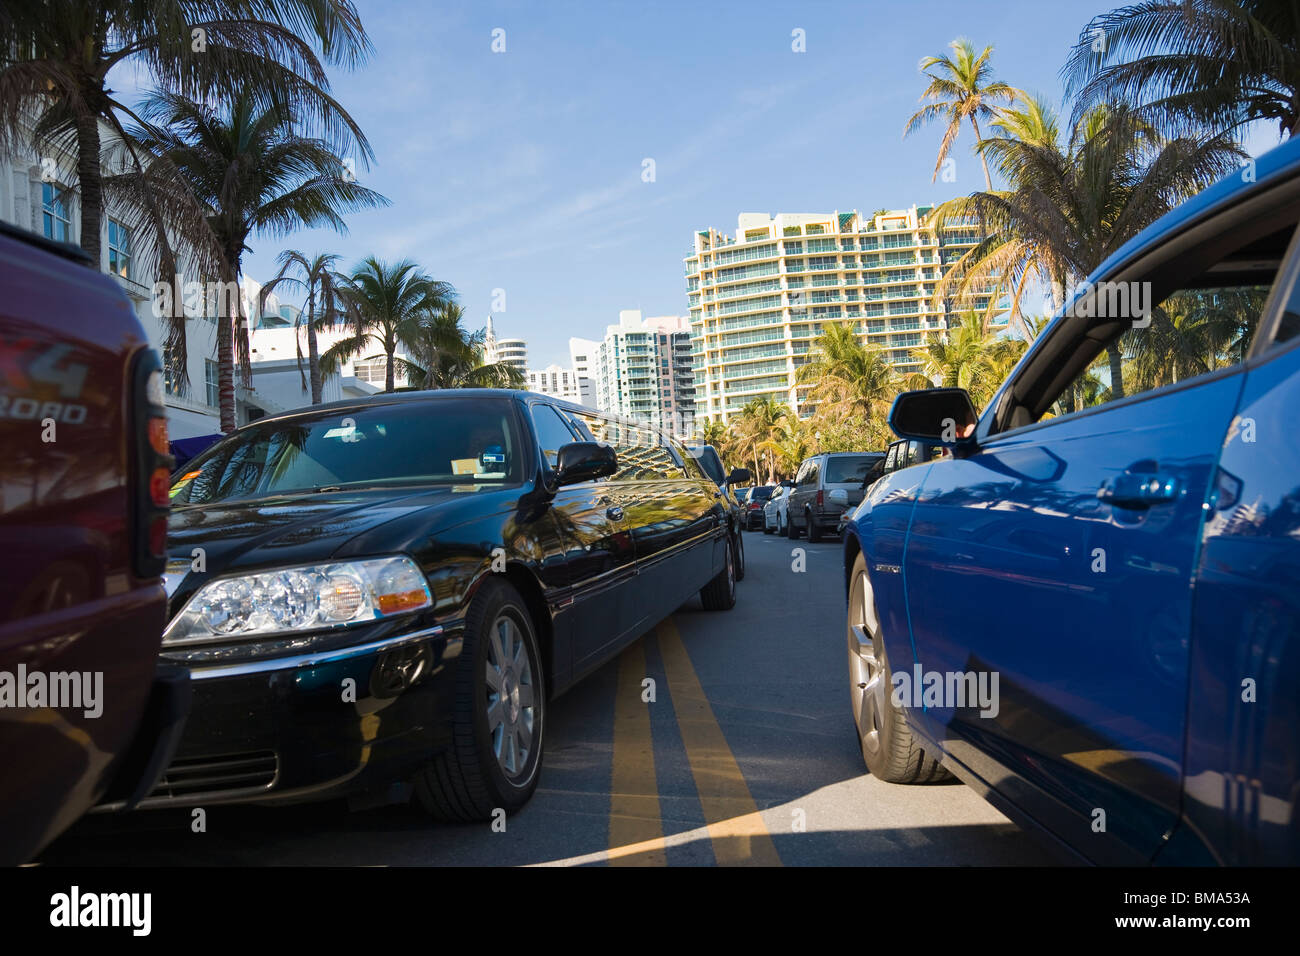 Limousine pris dans le trafic, South Beach, Florida, USA Banque D'Images